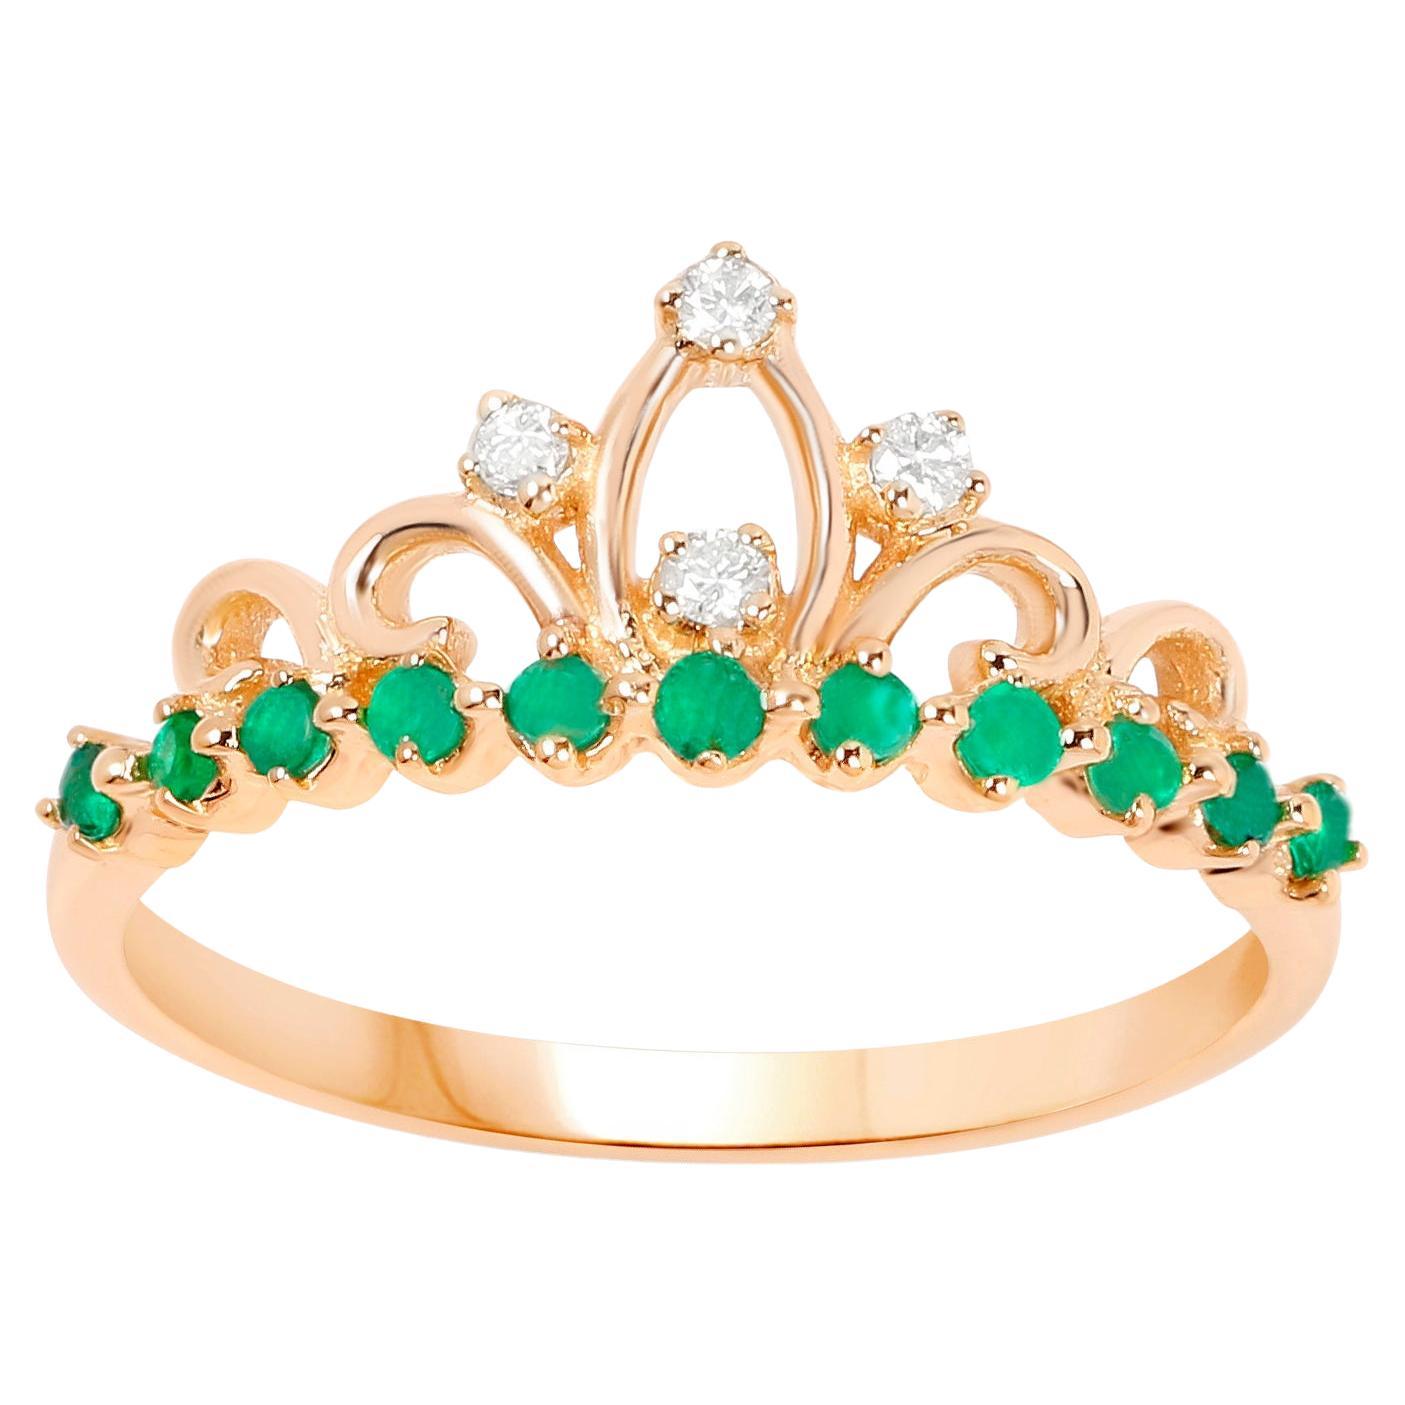 Tiara Ring Zambianische Smaragde und Diamanten 0,29 Karat 14K Gelbgold